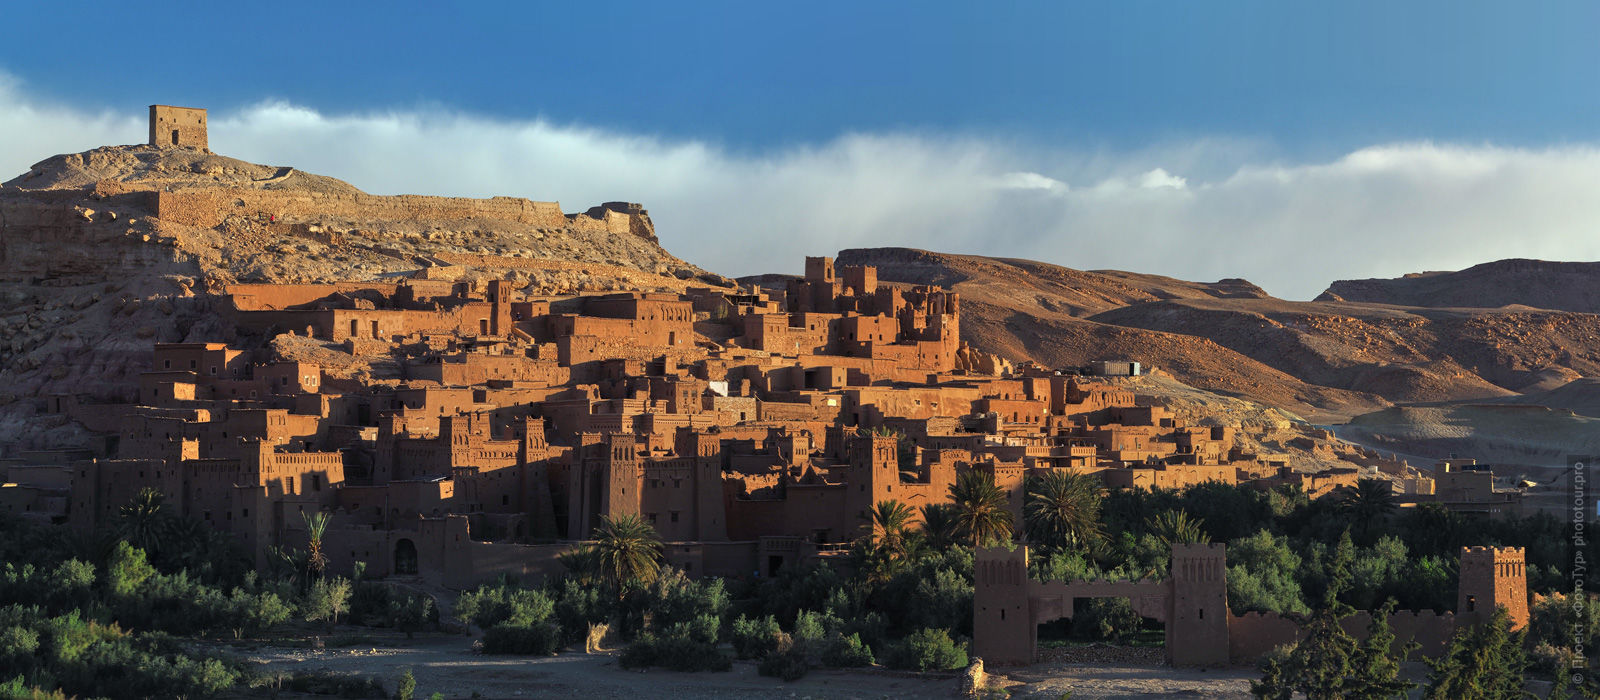 Ksar Ait Ben Haddou, Morocco. Adventure photo tour: medina, cascades, sands and ports of Morocco, April 4 - 17, 2020.